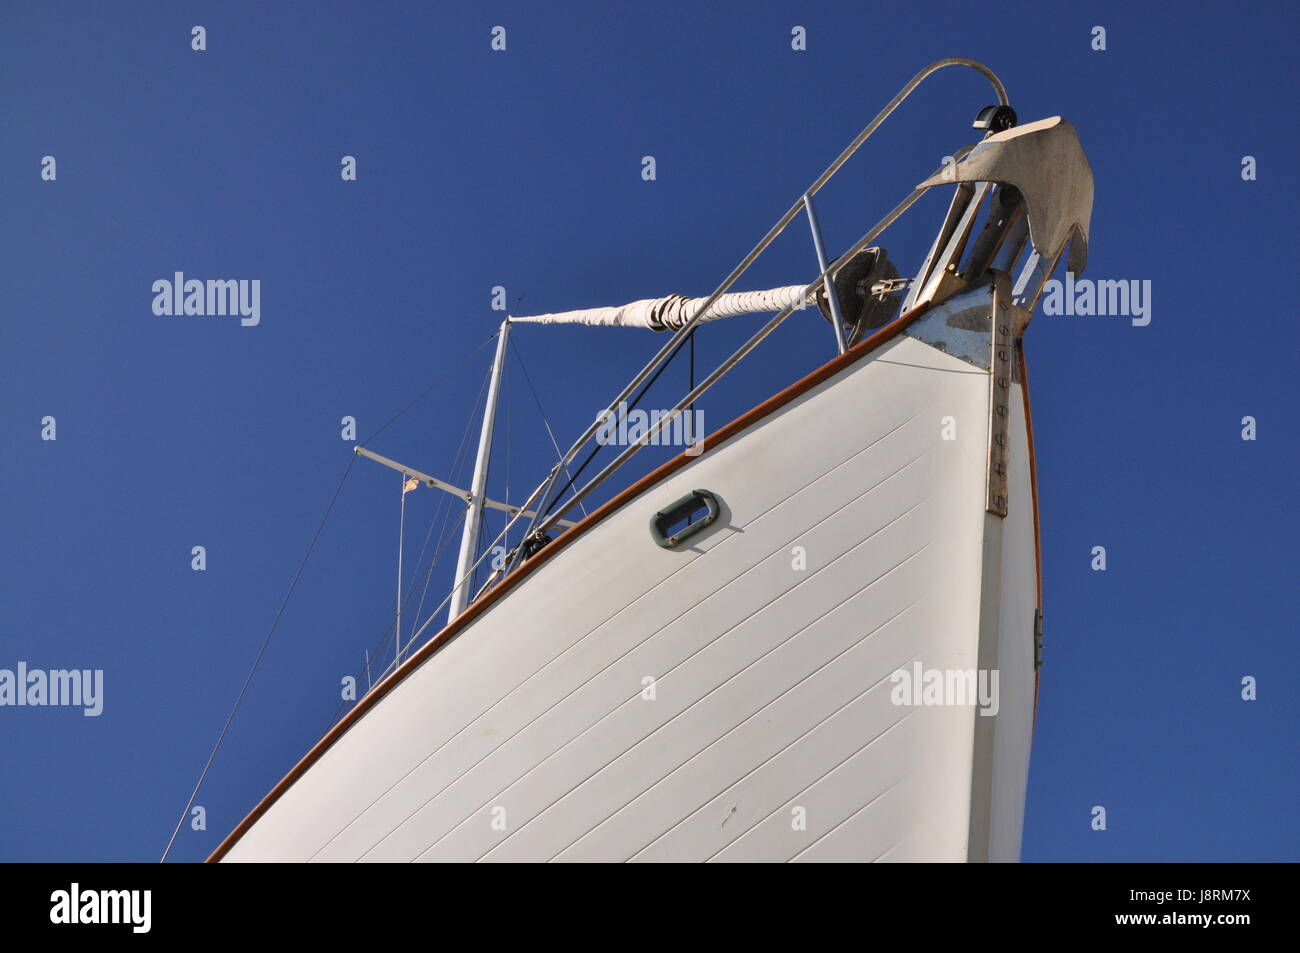 Detalle, navegación, navegación, yate, velero, velero, bote a remo, Foto de stock